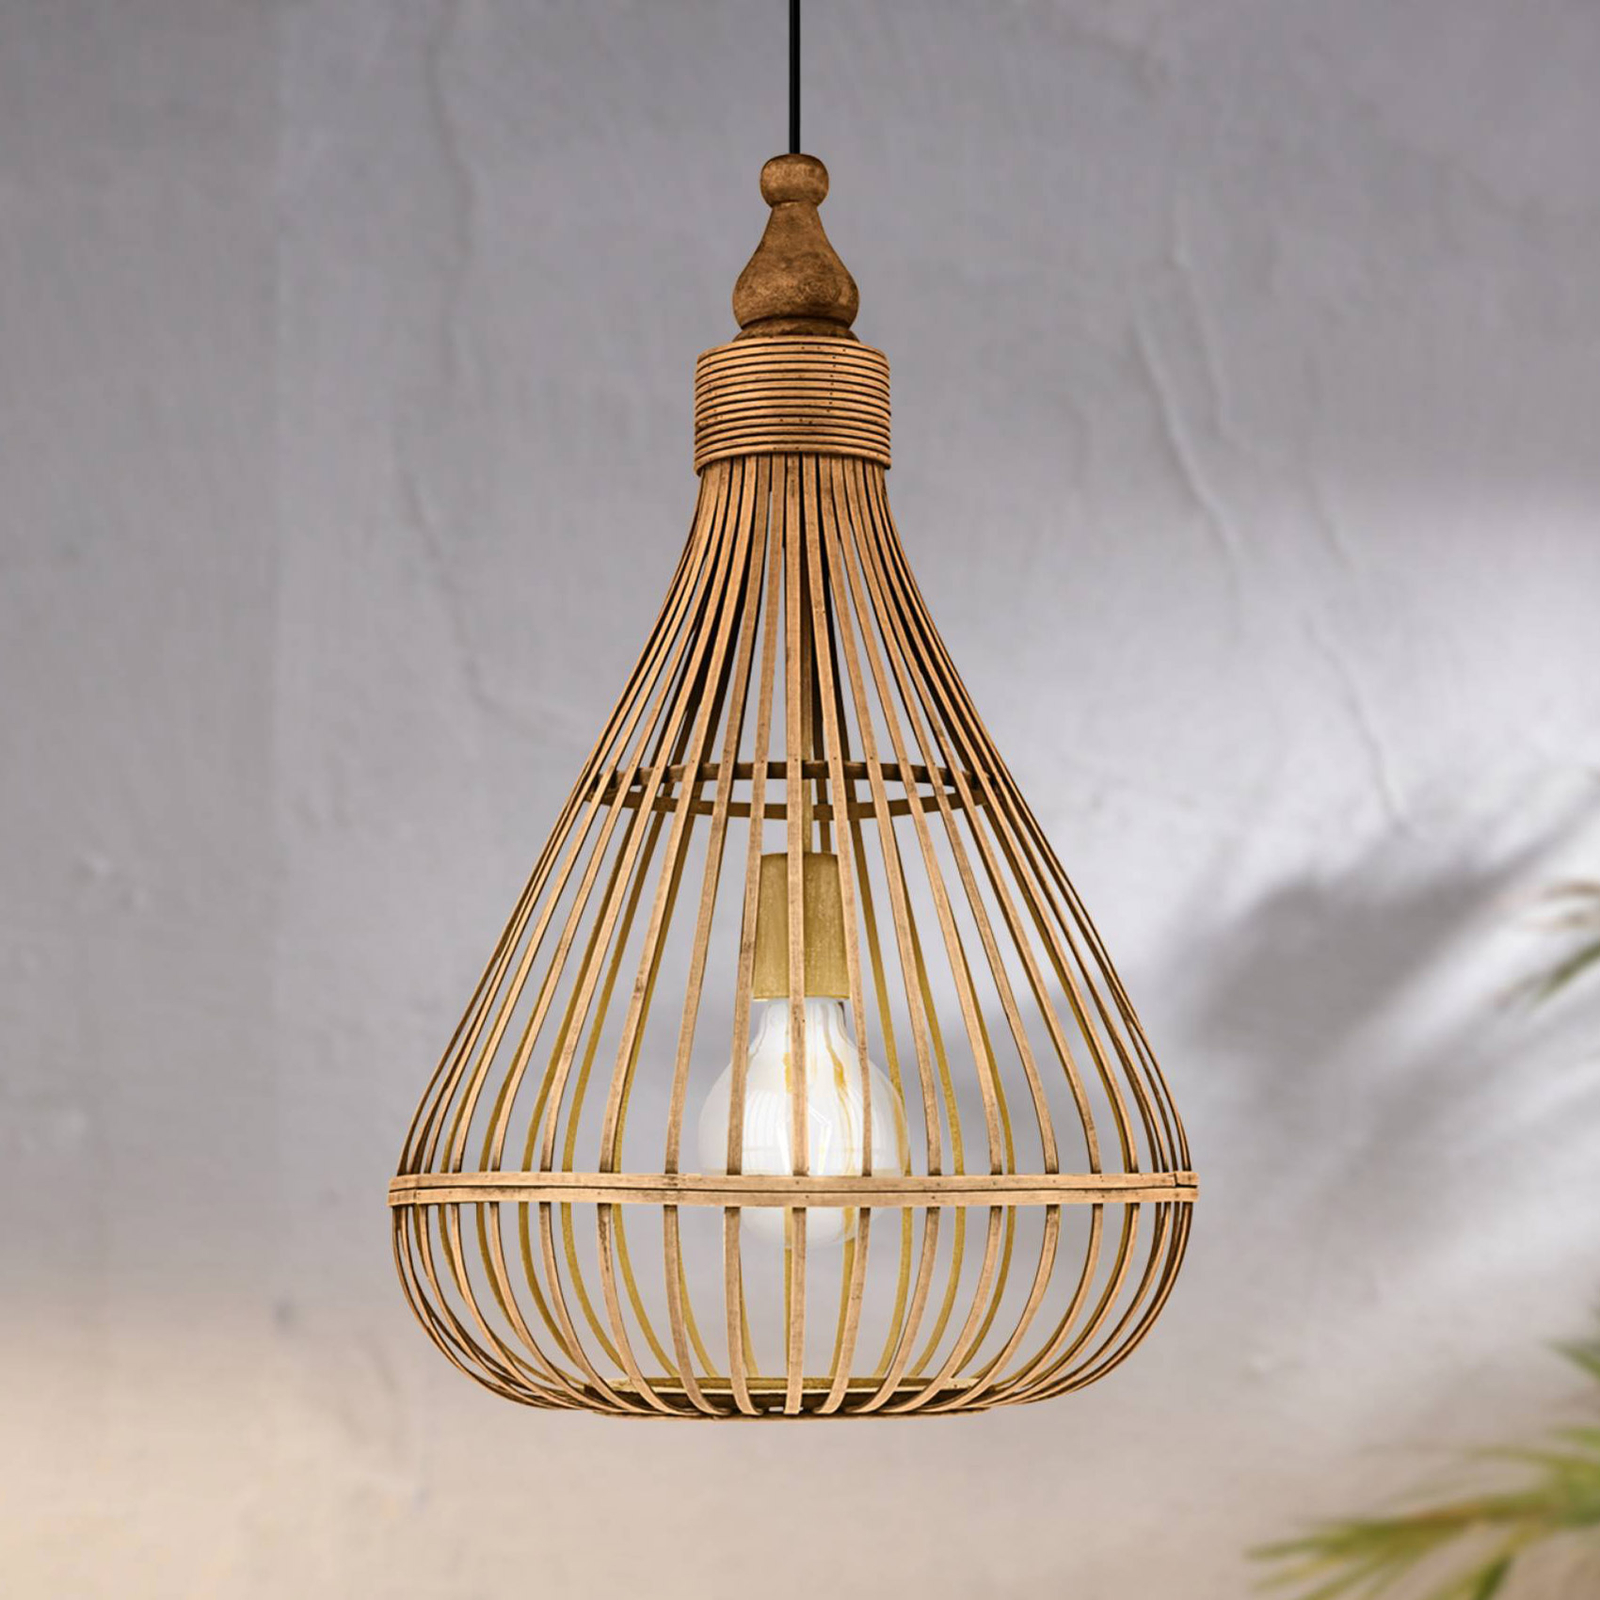 Závesná lampa Amsfield z bambusu tvar hrušky